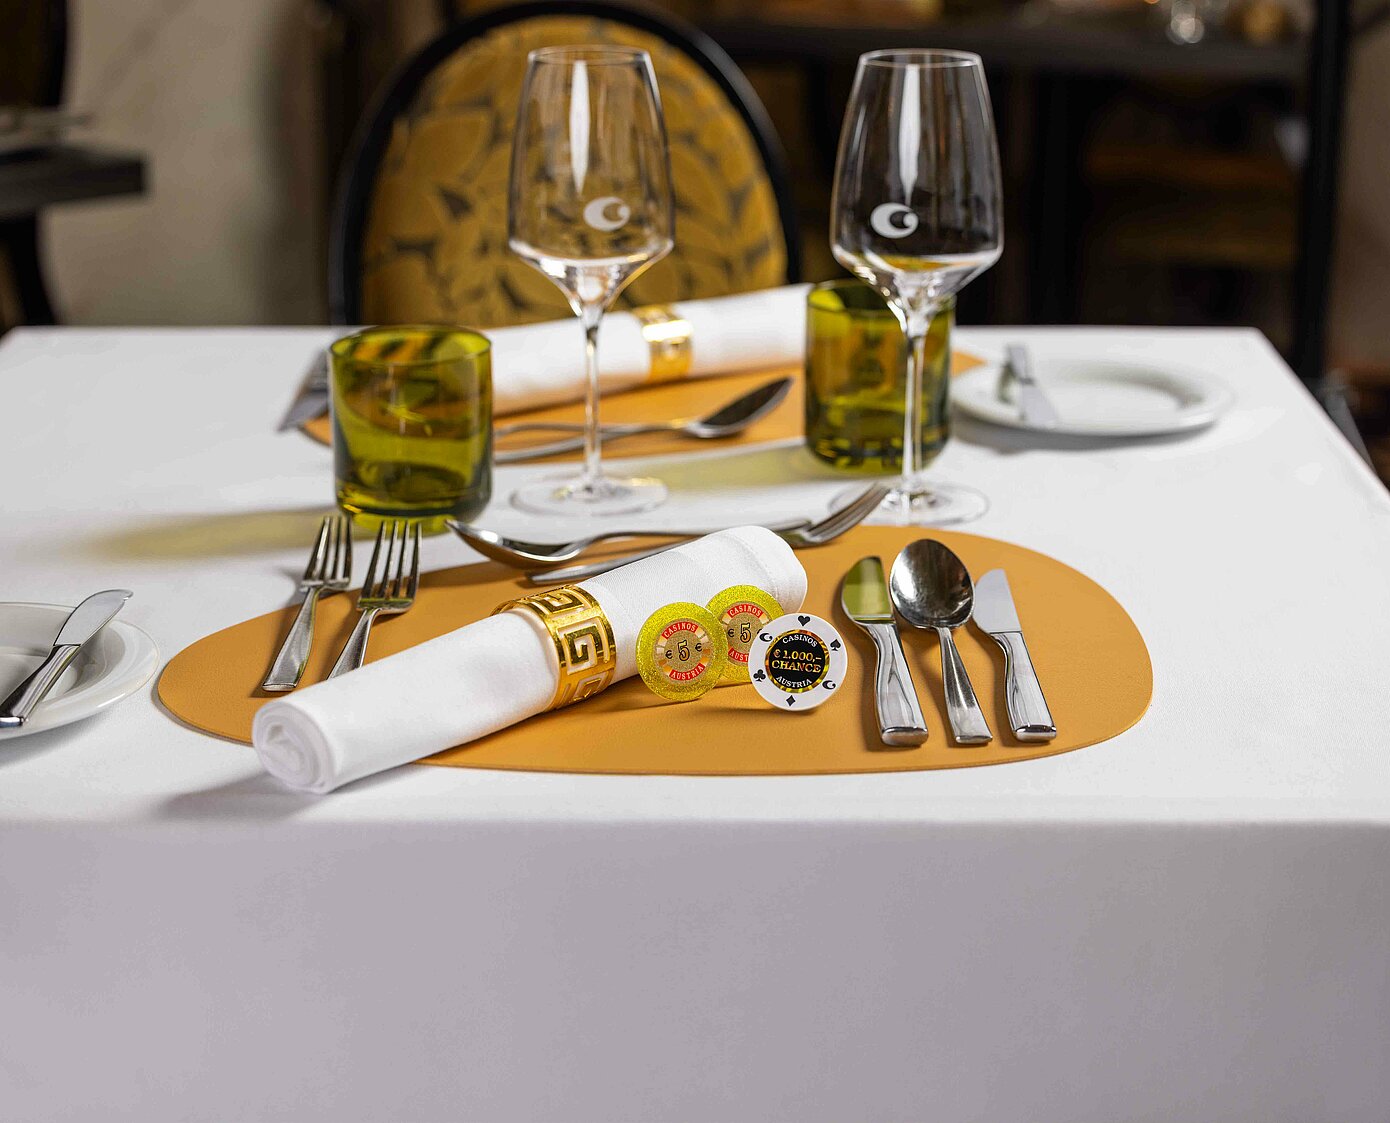 Gedeckter Tisch für Dinner und Casino im Casino Restaurant mit 10 Euro Begrüßungsjetons und Gewinnchance Jeton